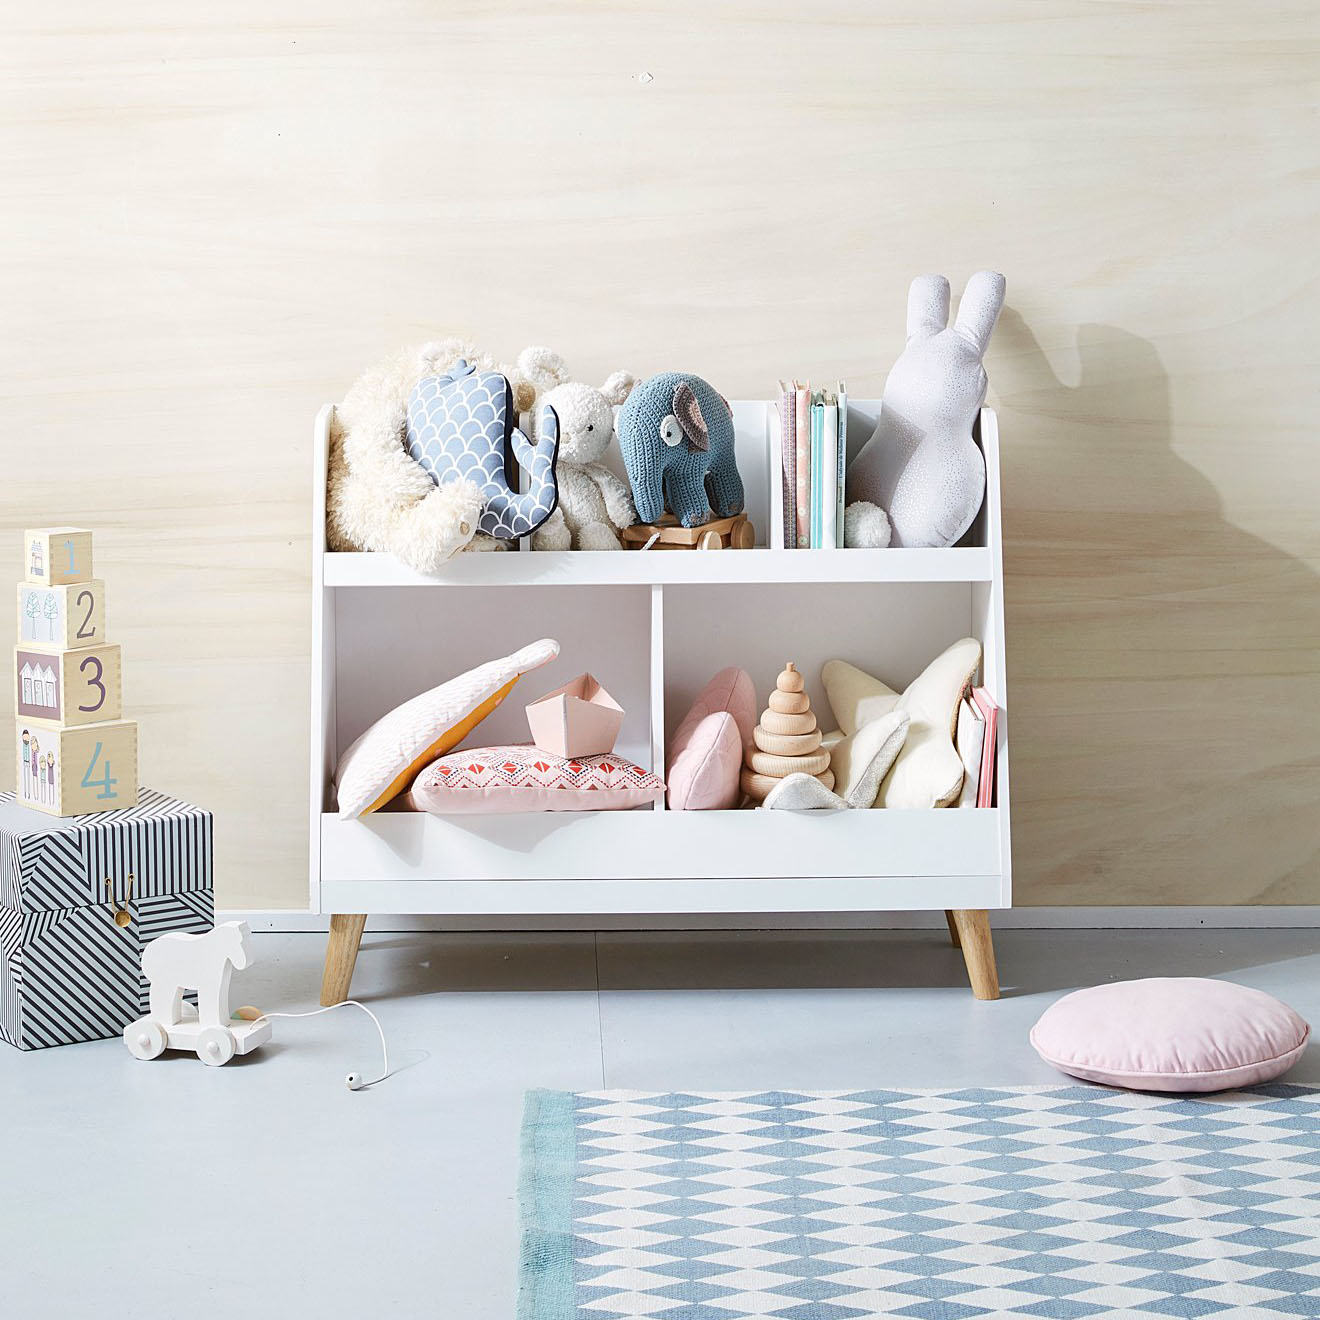 MINU米努新品儿童幼儿园书架 床头柜 整理架收纳架玩具架组合书架